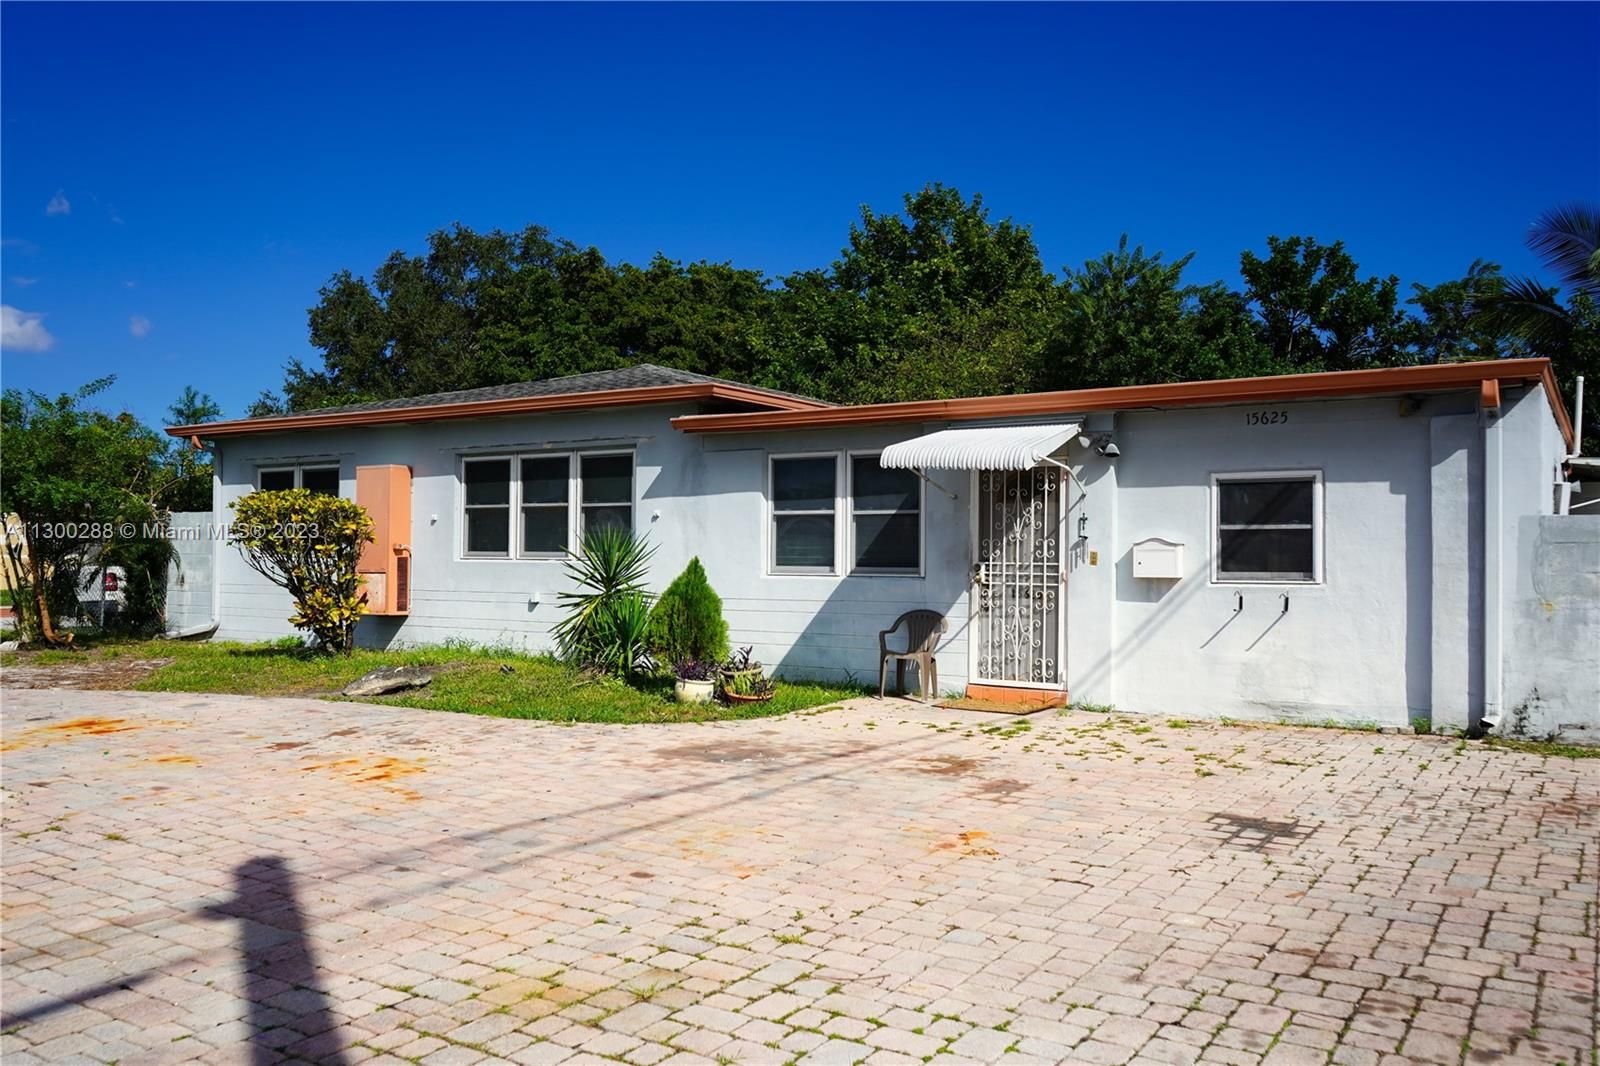 Real estate property located at 15625 Ne 5th Ave, Miami-Dade County, North Miami Beach, FL